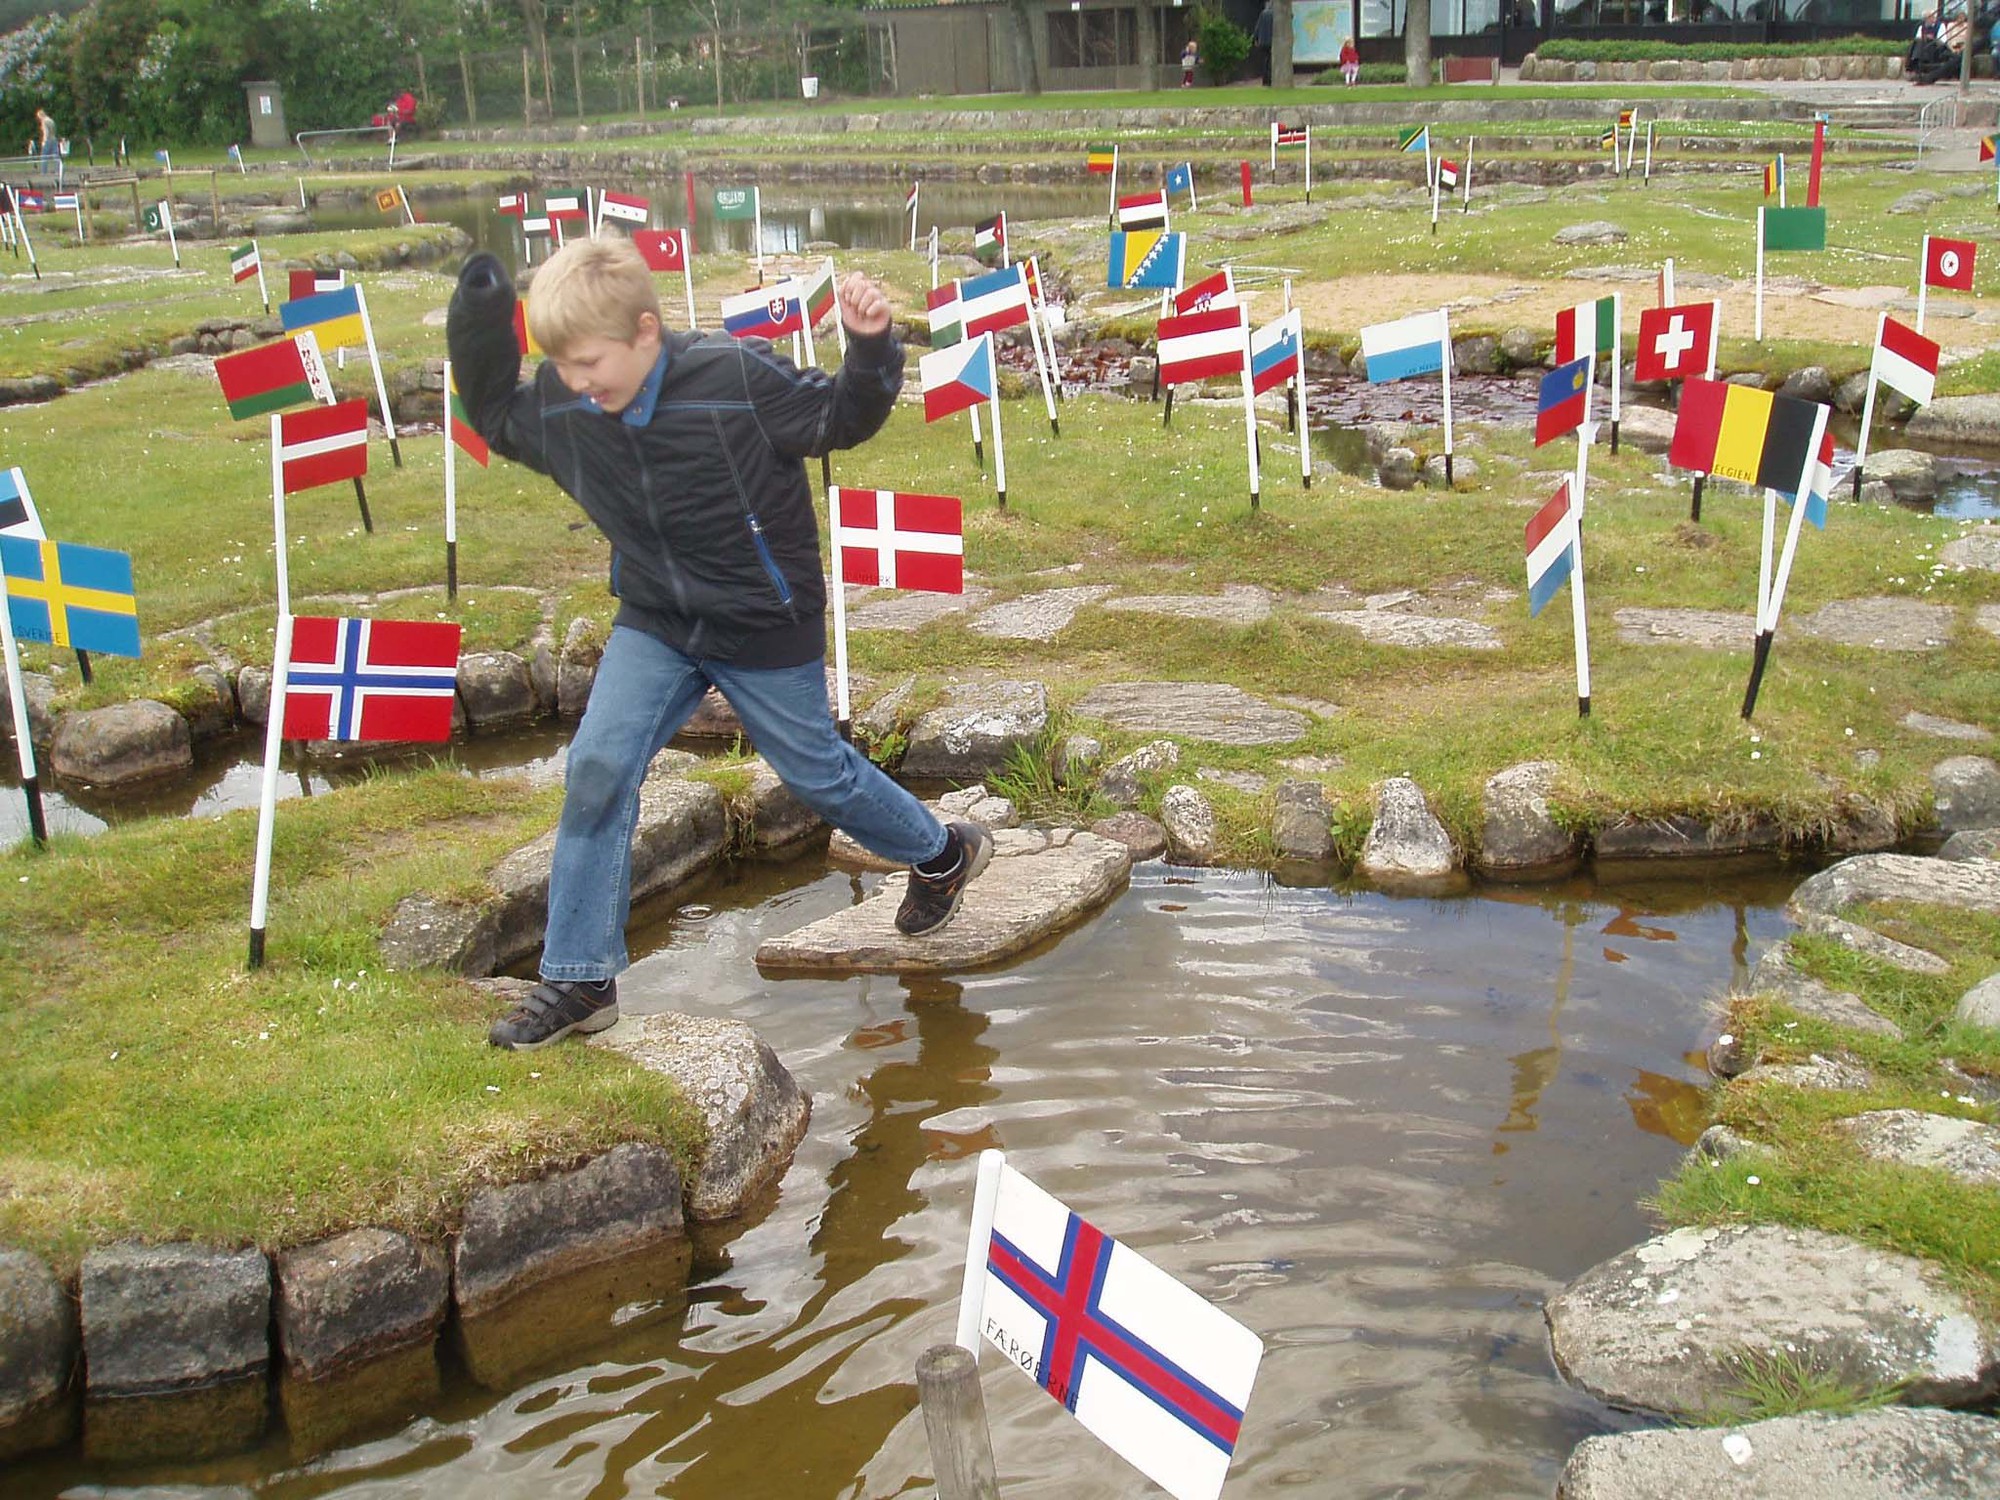 Du lịch vòng quanh thế giới chỉ bằng một vòng hồ tại Đan Mạch - Ảnh 4.